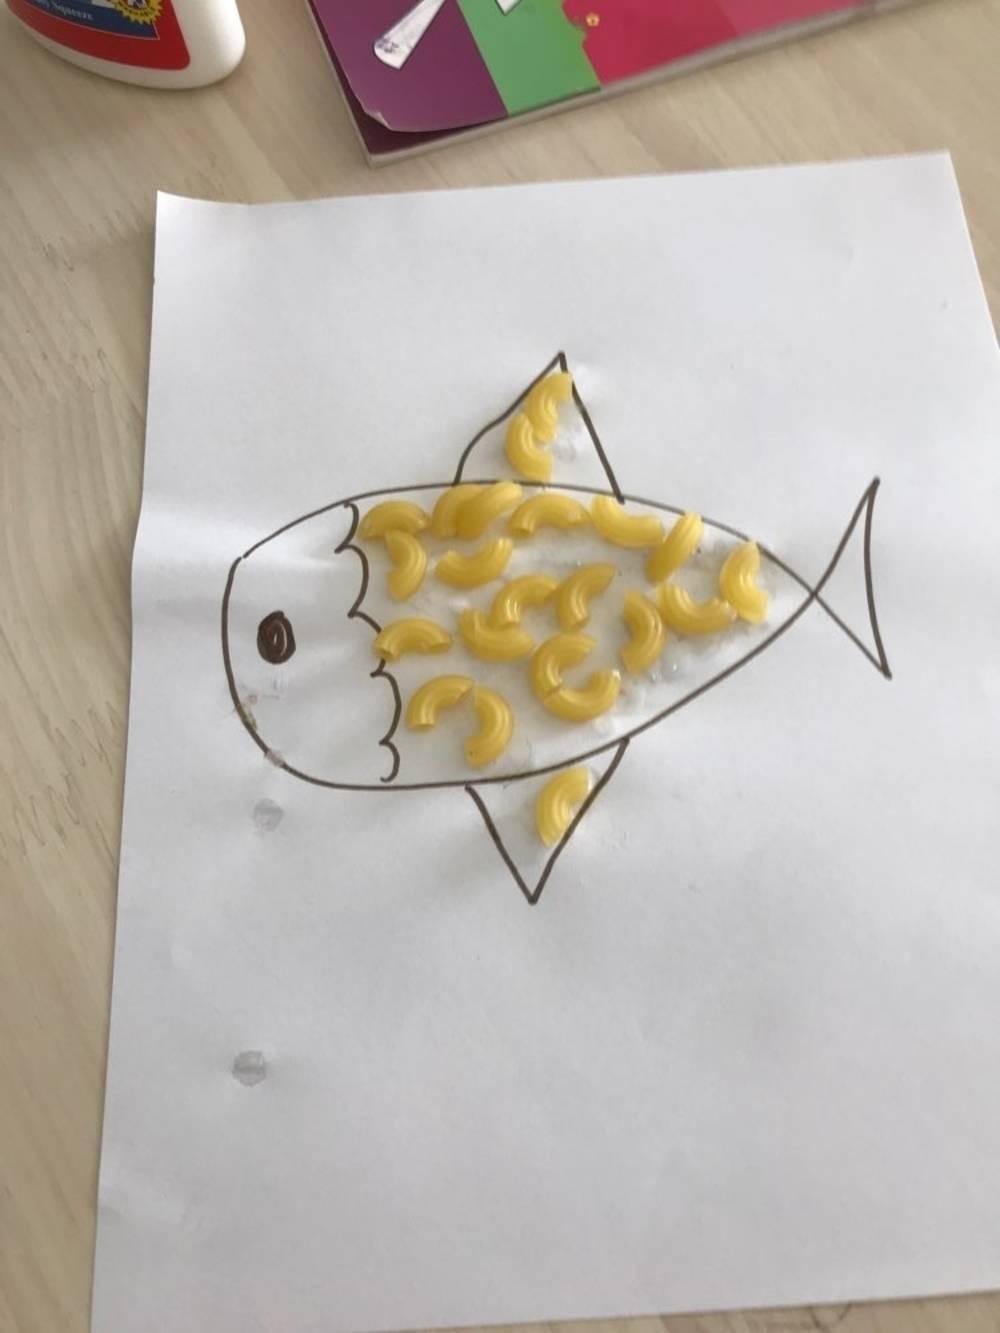 رسم السمكة باستخدام المعكرونة15423